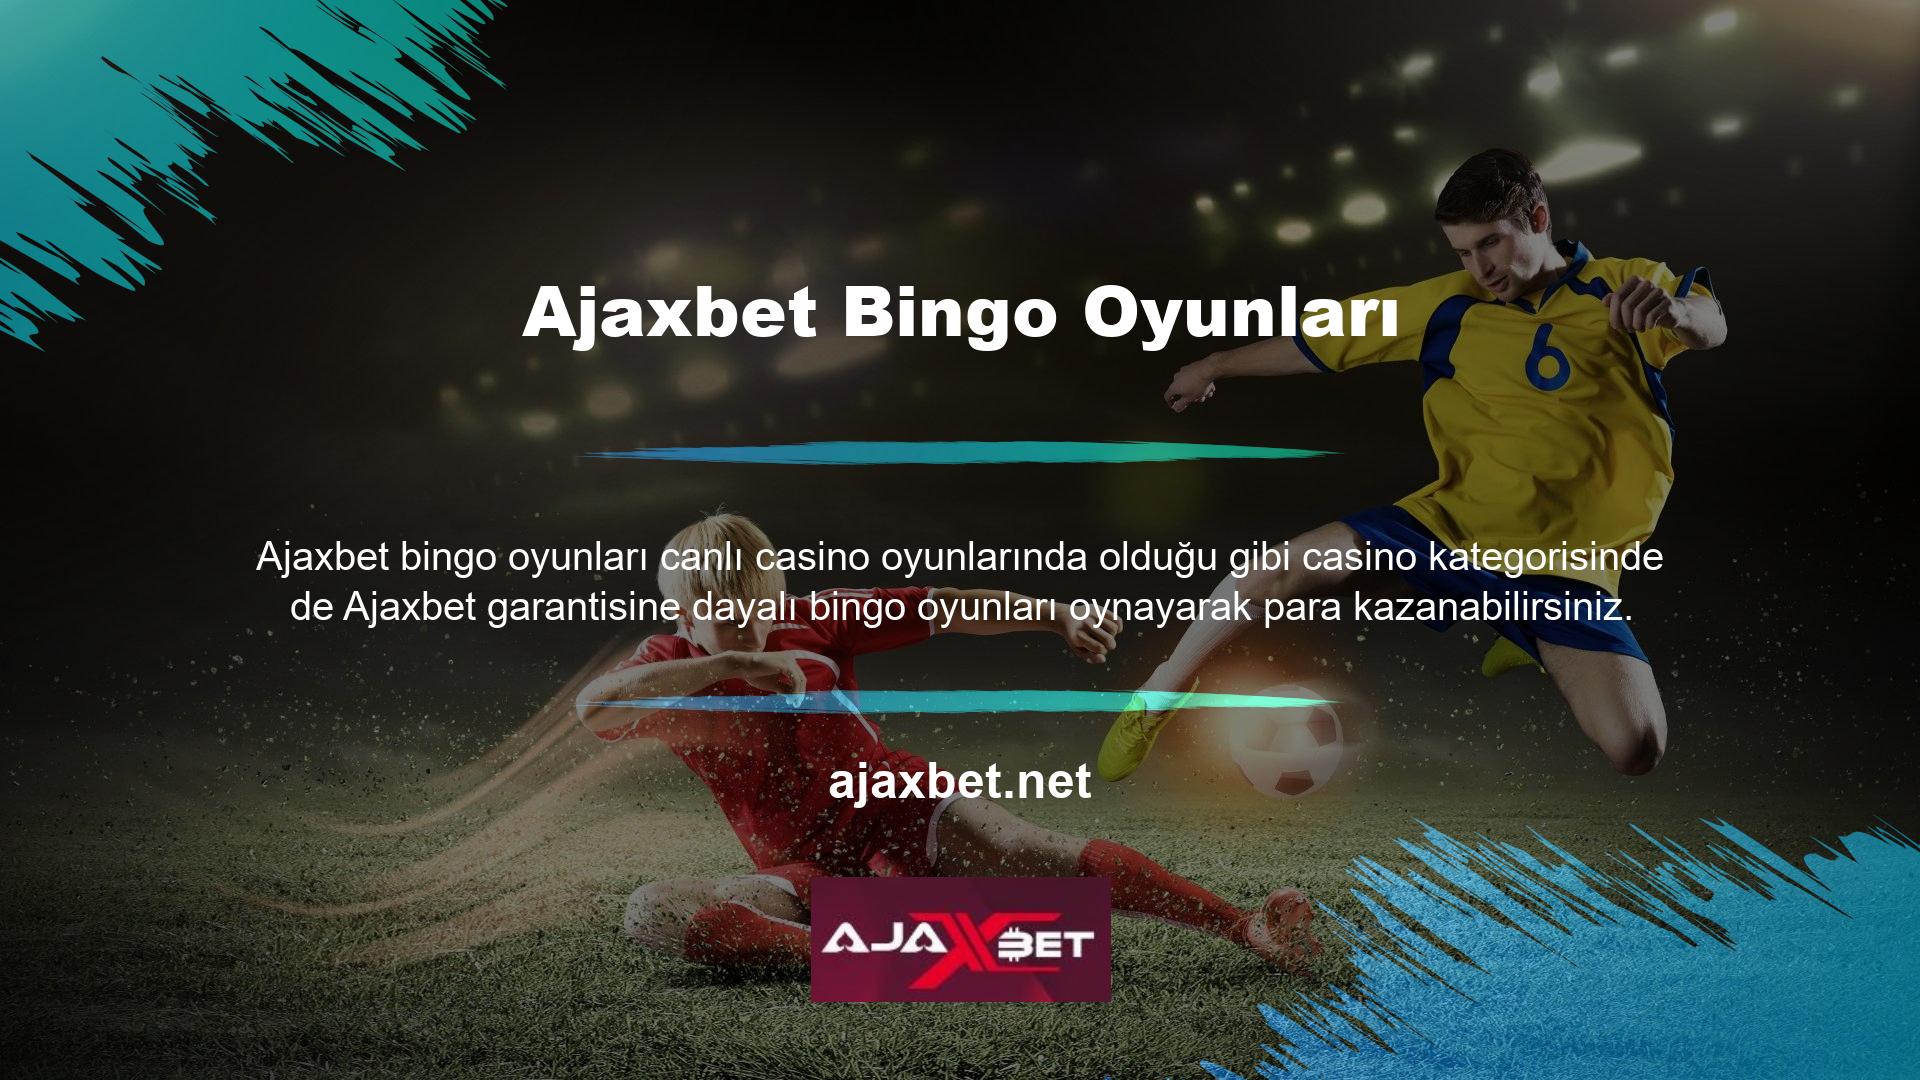 Üyeler, Ajaxbet bingo oyunları web sitesinde farklı türde bingo oynayabilirler